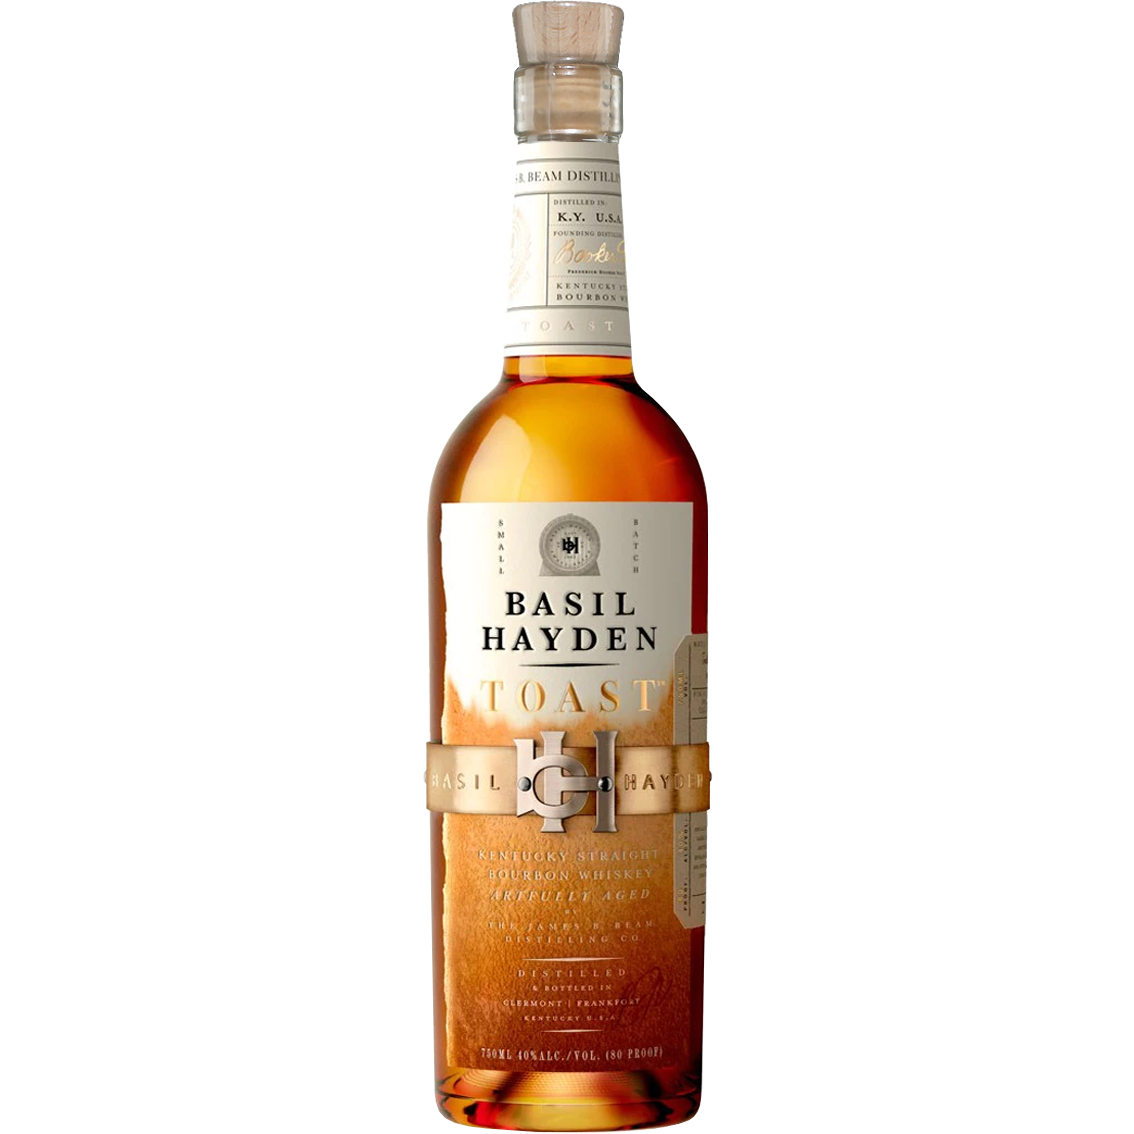 Basil Hayden's 'Toast' Kentucky Straight Bourbon Whiskey